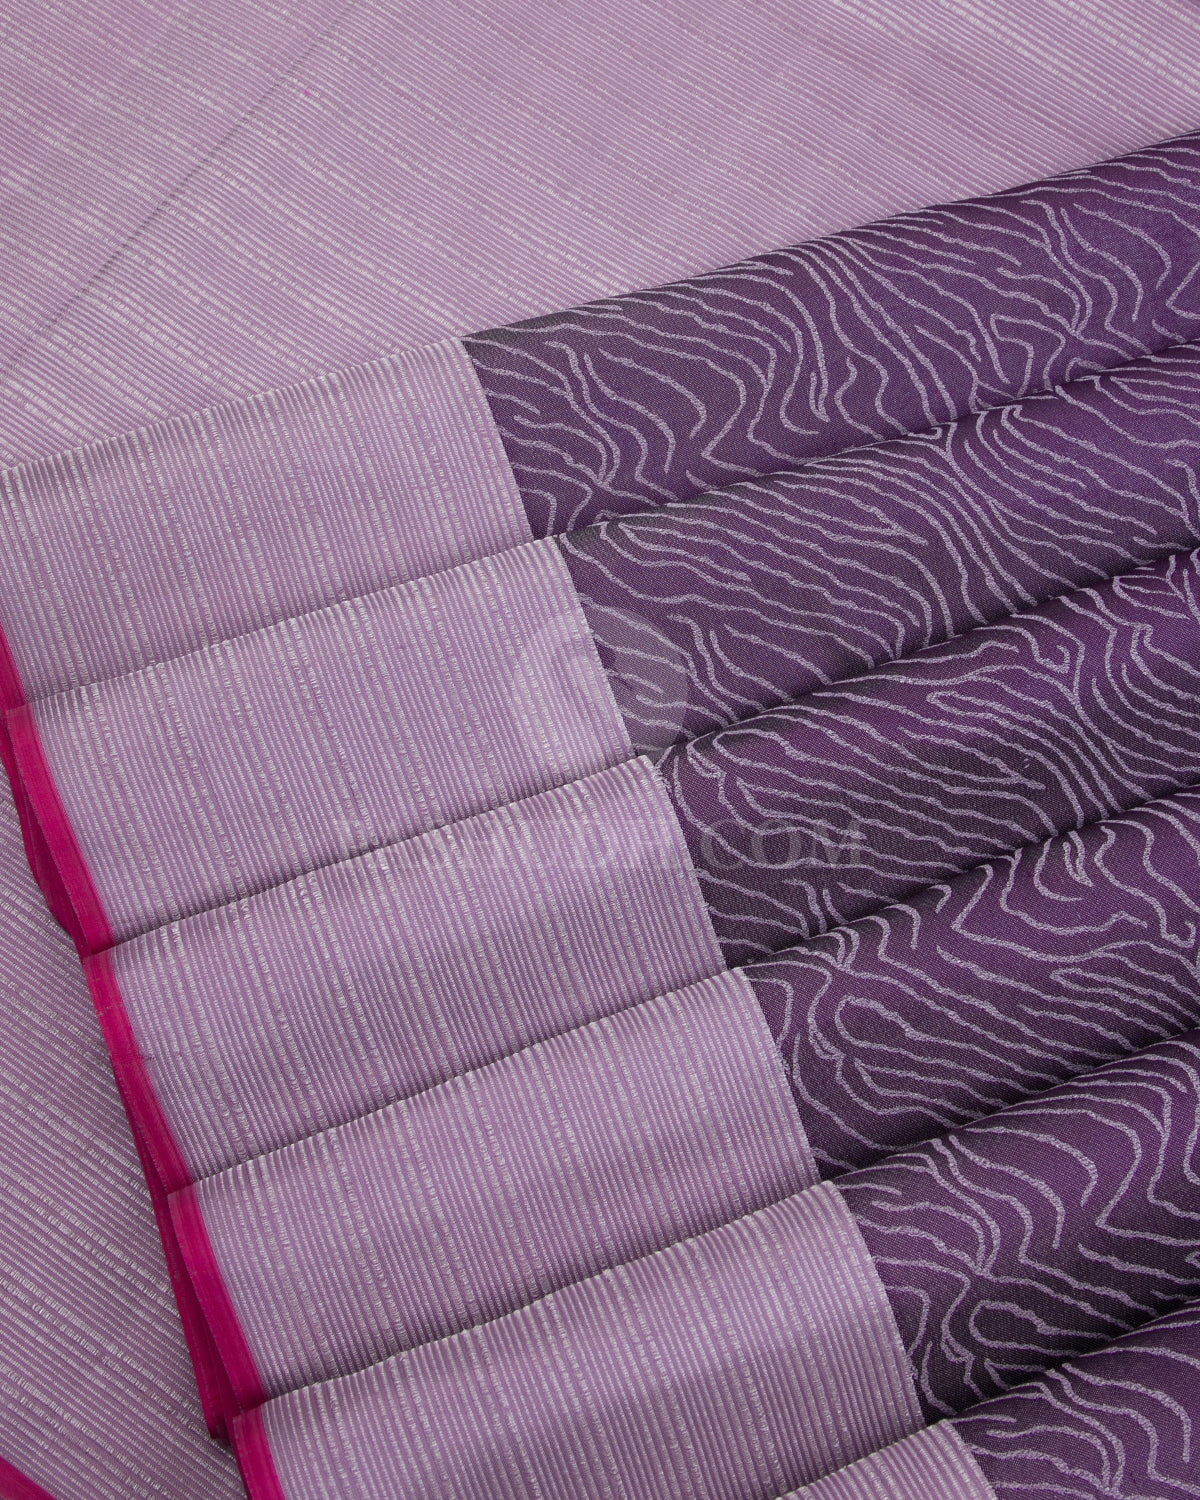 Dark Violet & Lilac Kanjivaram Silk Saree - D507(D) - View 3